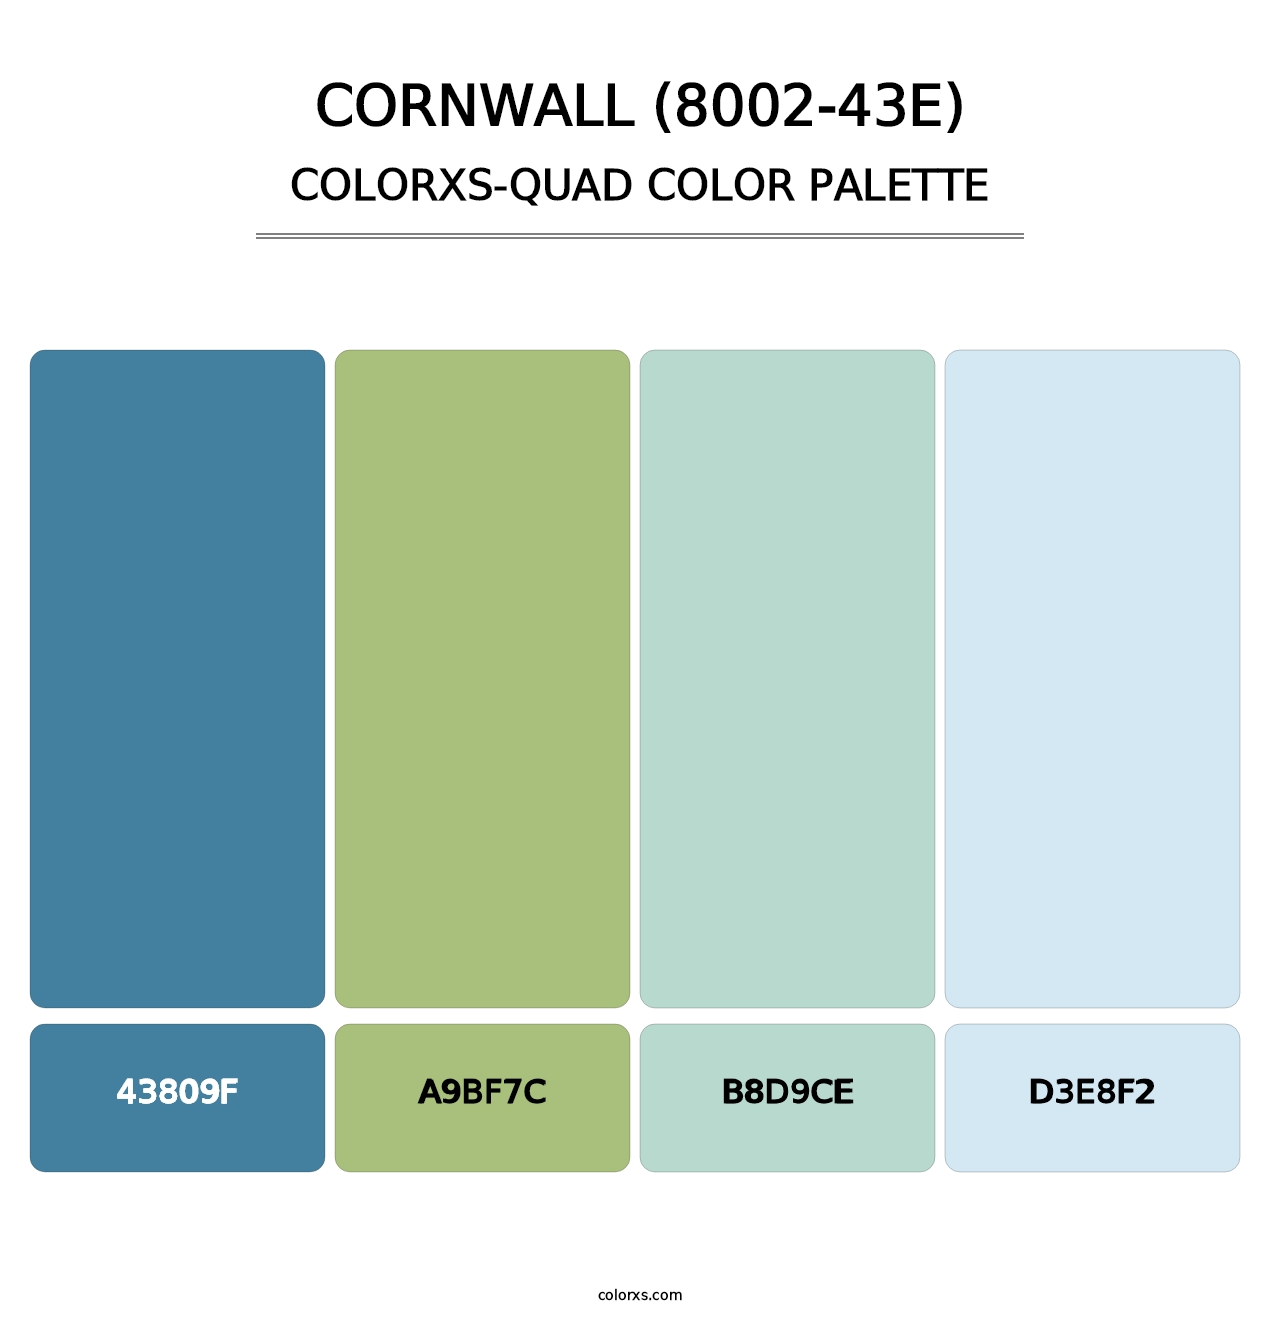 Cornwall (8002-43E) - Colorxs Quad Palette